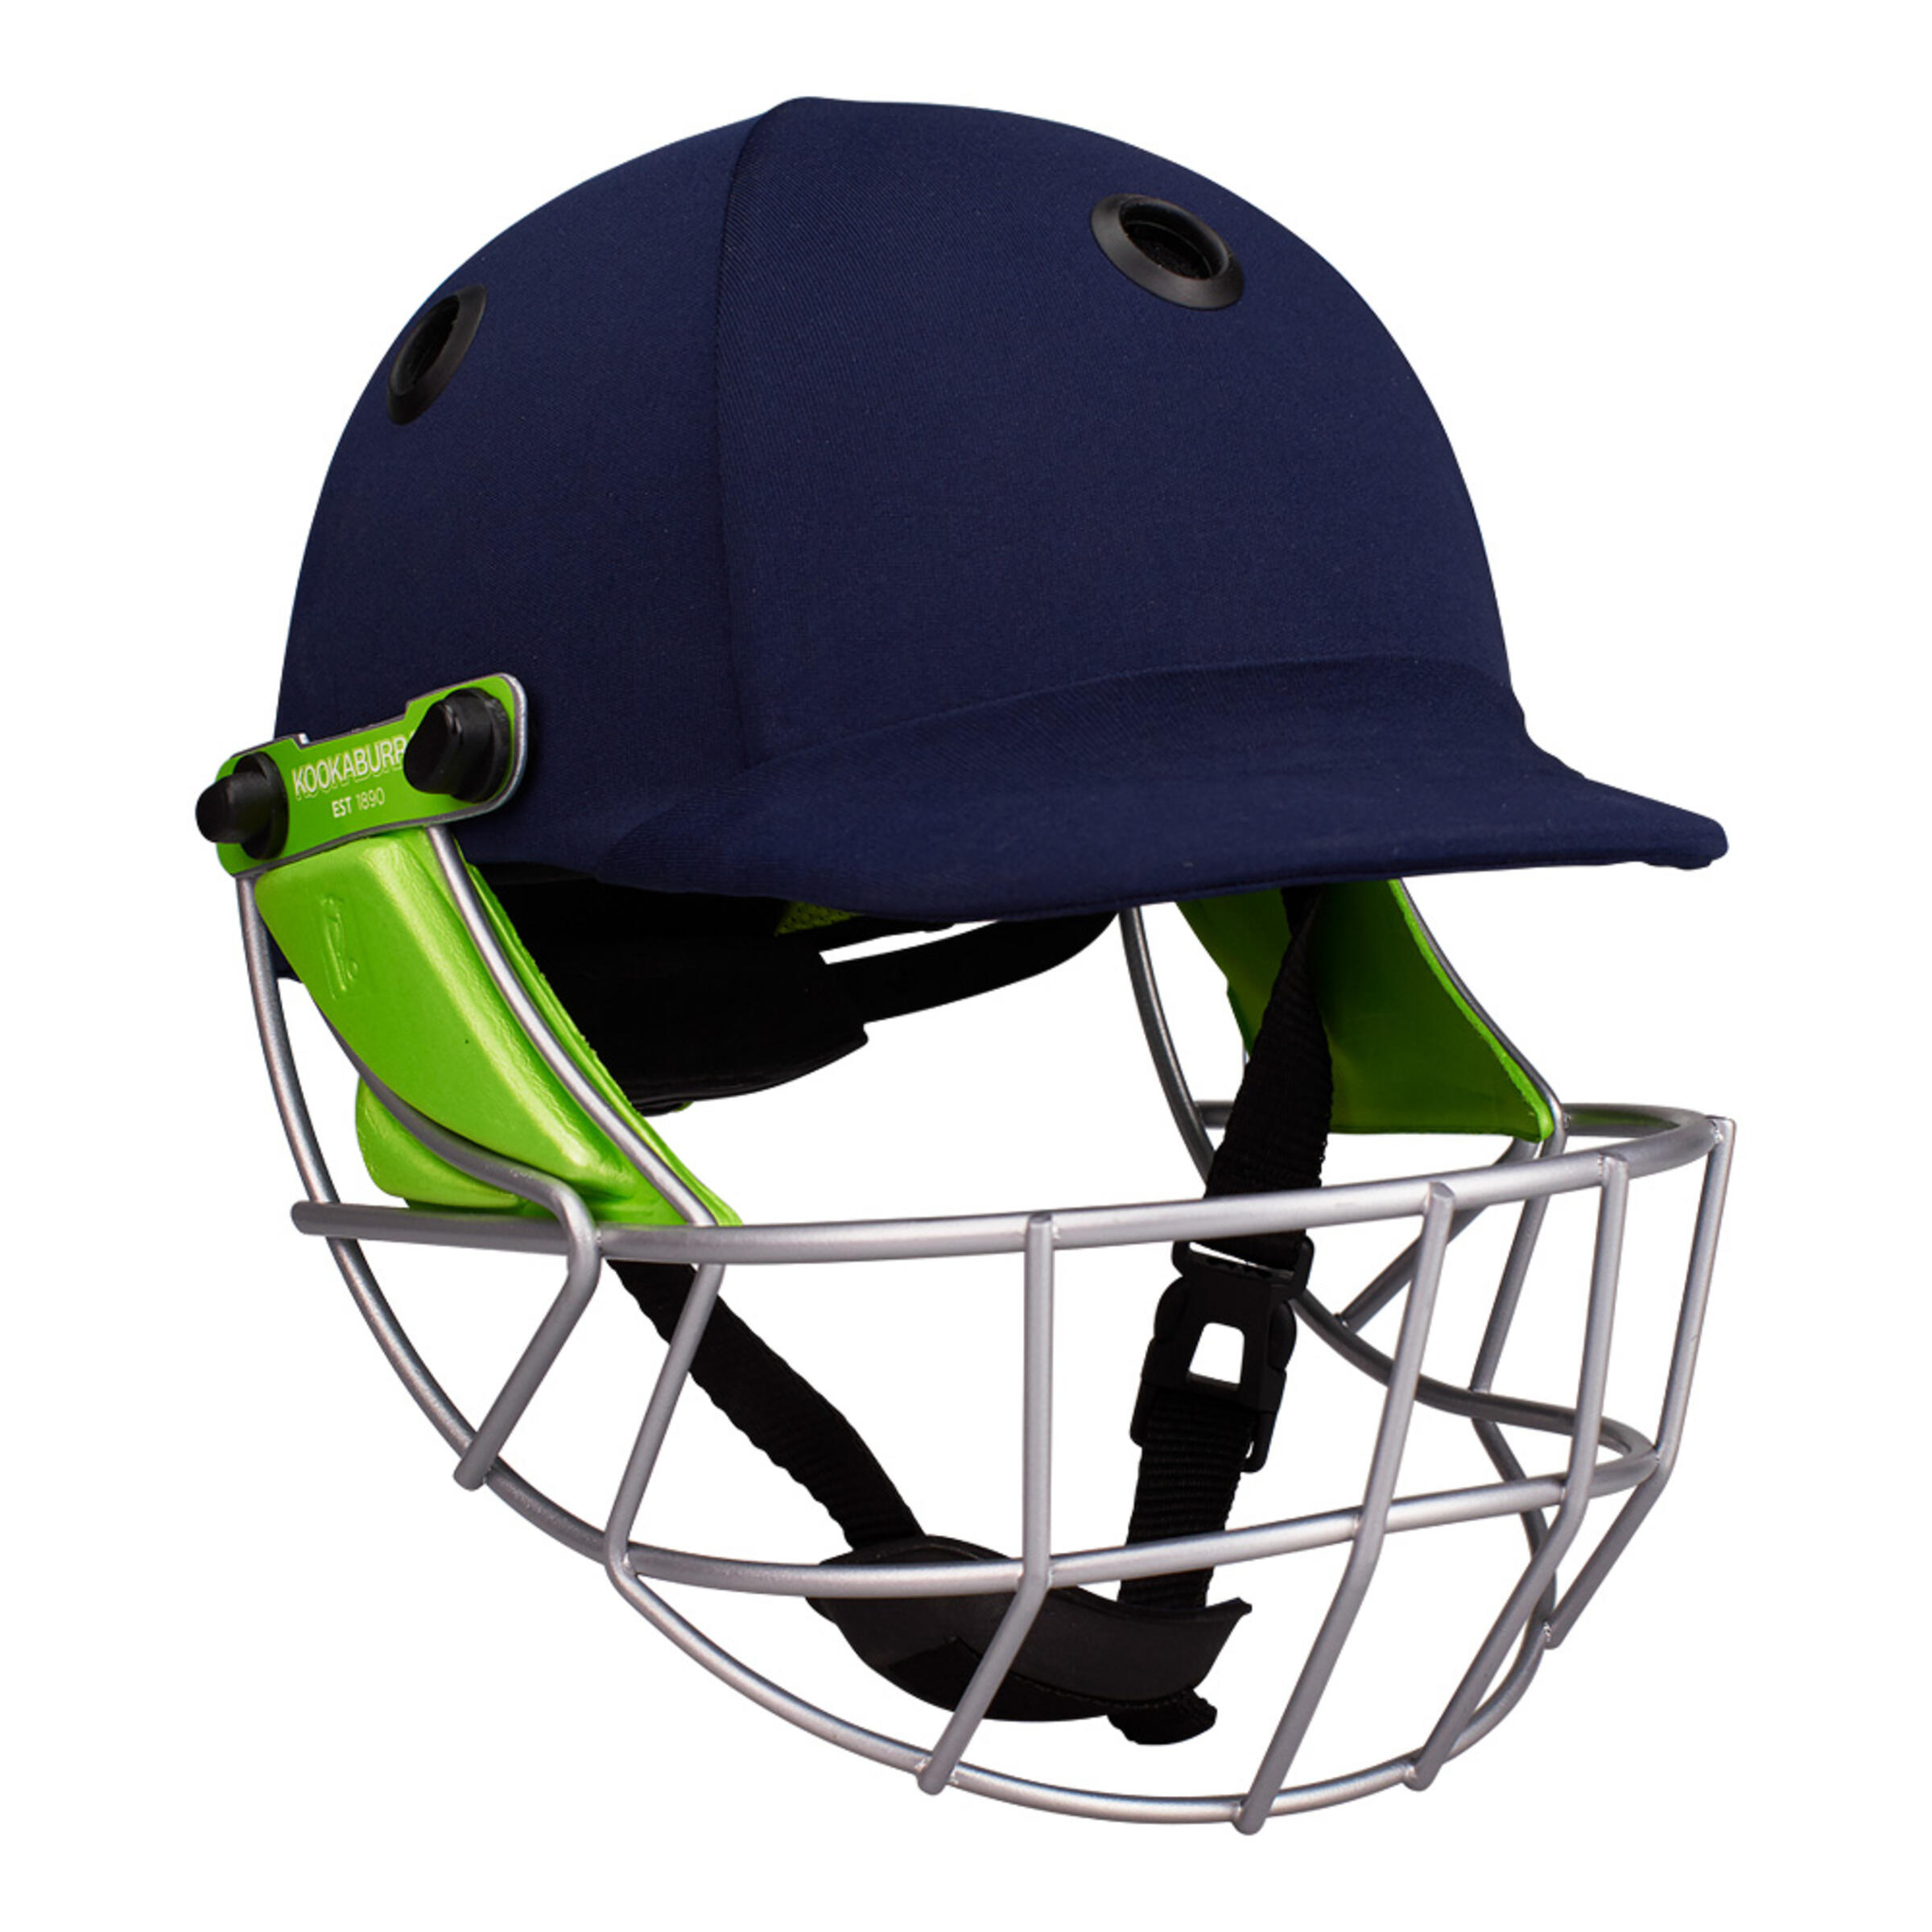 KOOKABURRA Pro 600 Cricket Batting Helmet Adult Large